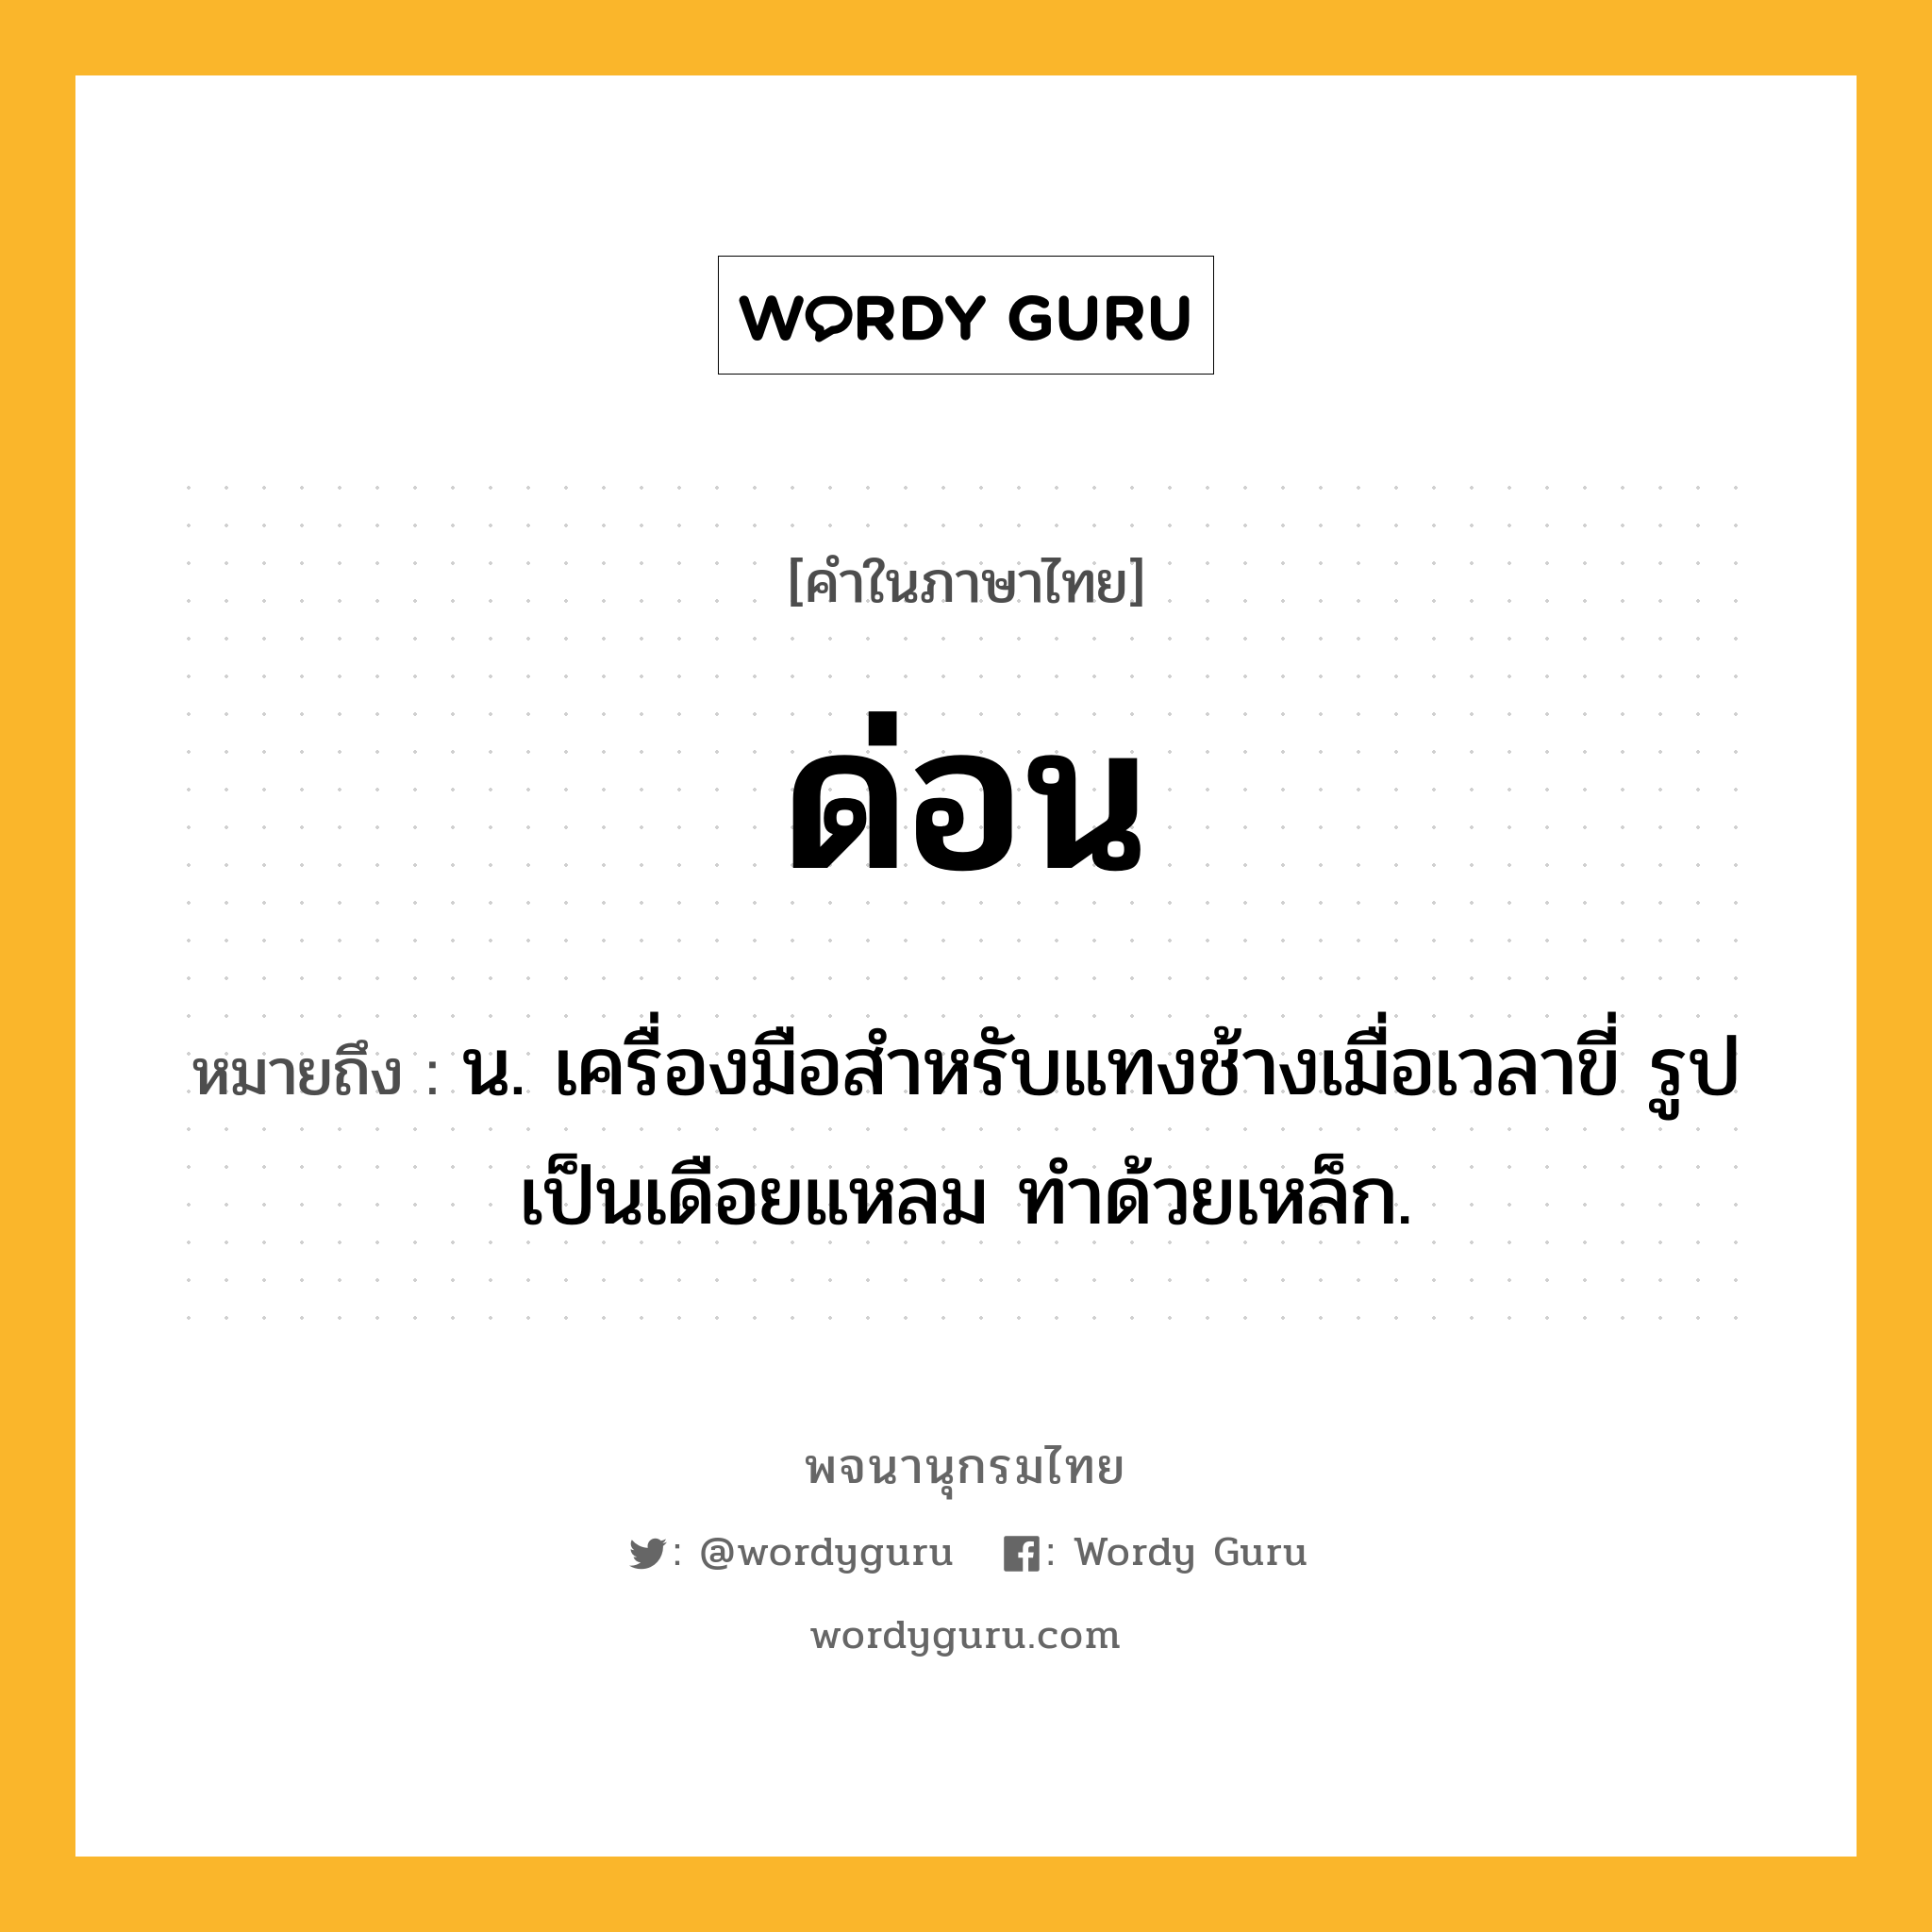 ด่อน ความหมาย หมายถึงอะไร?, คำในภาษาไทย ด่อน หมายถึง น. เครื่องมือสําหรับแทงช้างเมื่อเวลาขี่ รูปเป็นเดือยแหลม ทําด้วยเหล็ก.